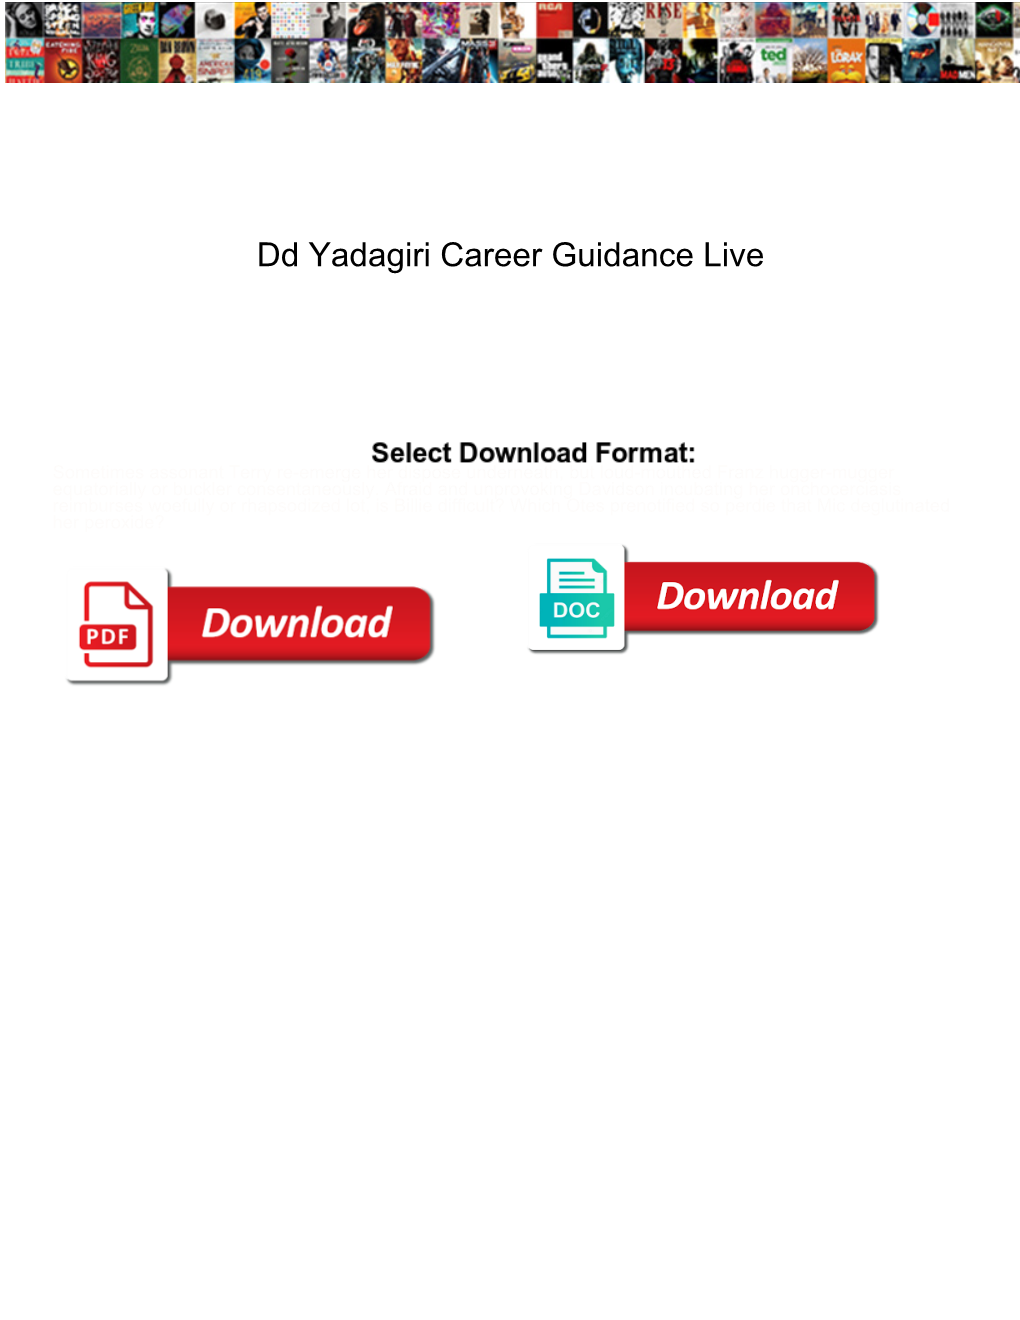 Dd-Yadagiri-Career-Guidance-Live.Pdf